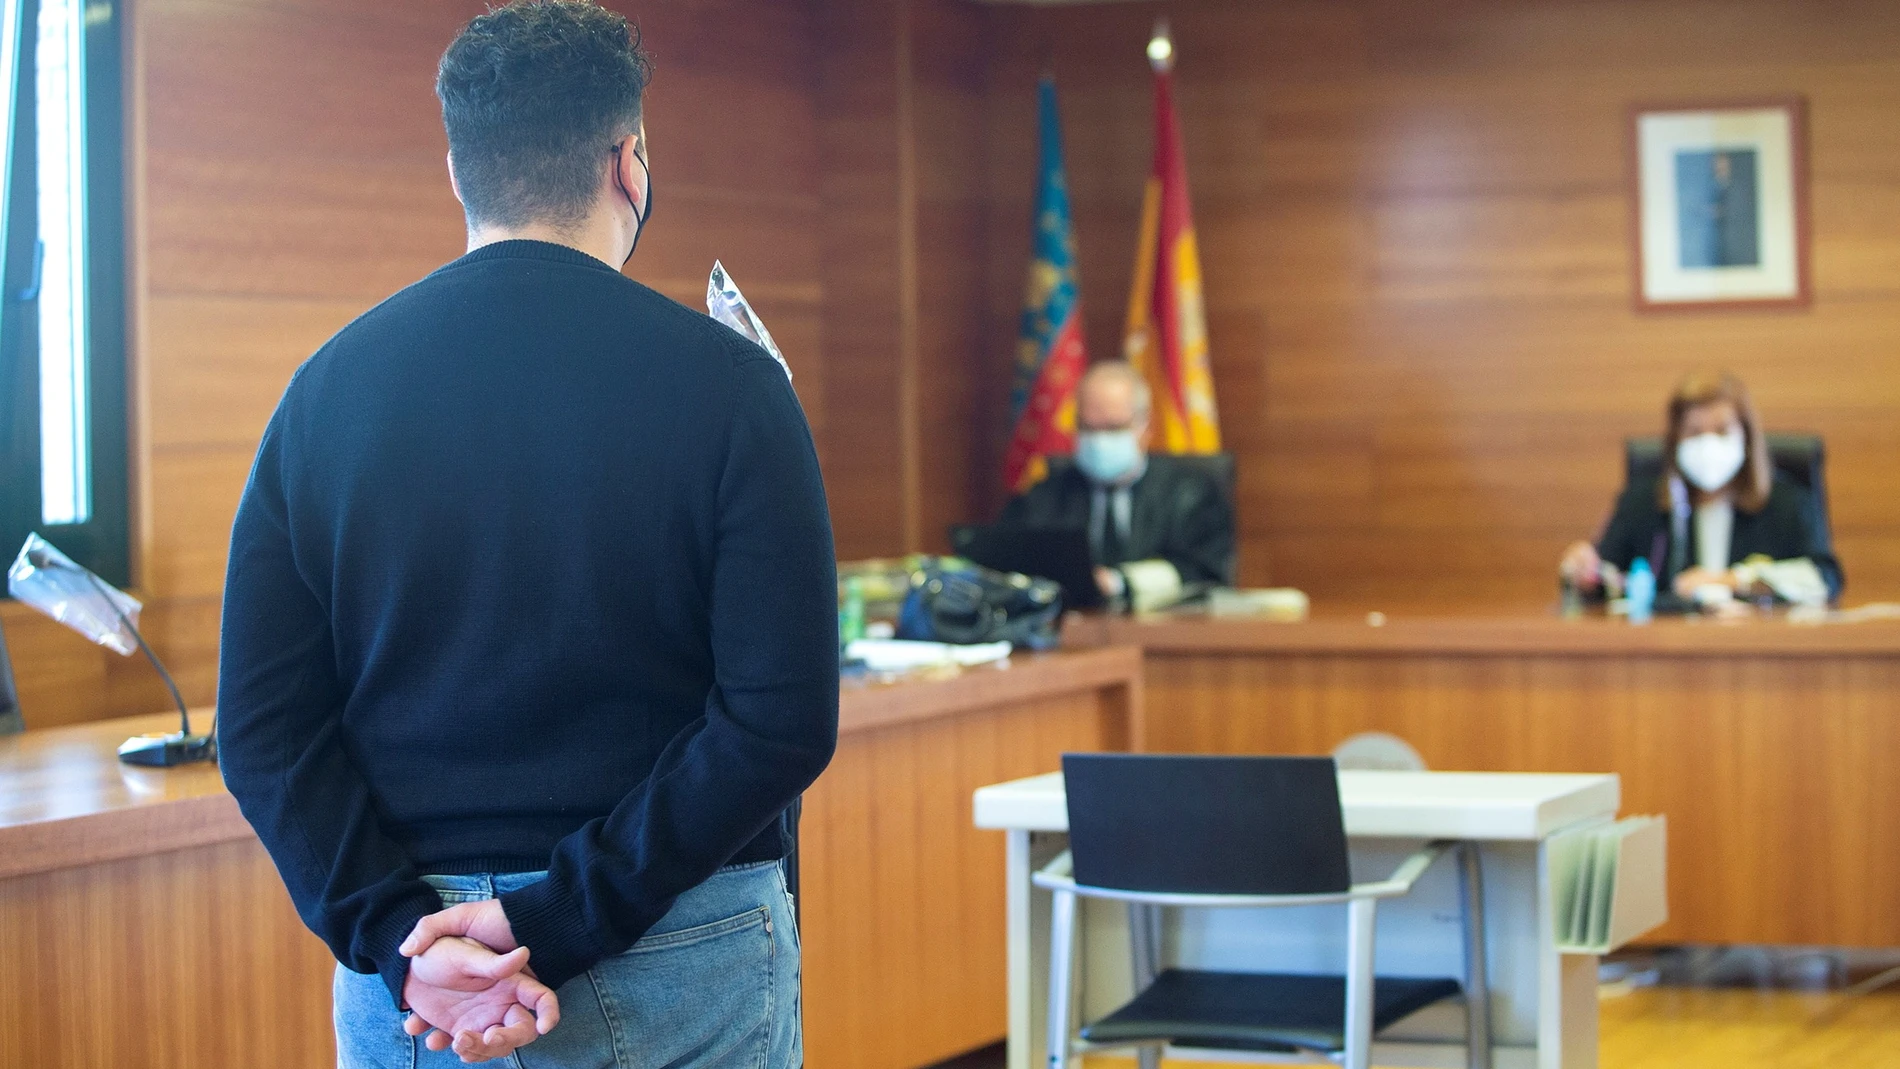 La sección segunda de la Audiencia Provincial de Castellón juzga hoy a un catequista de 20 años por presuntos abusos sexuales a dos menores de edad en un piso en el que la parroquia con la que colaboraba y donde guardaba objetos religiosos.